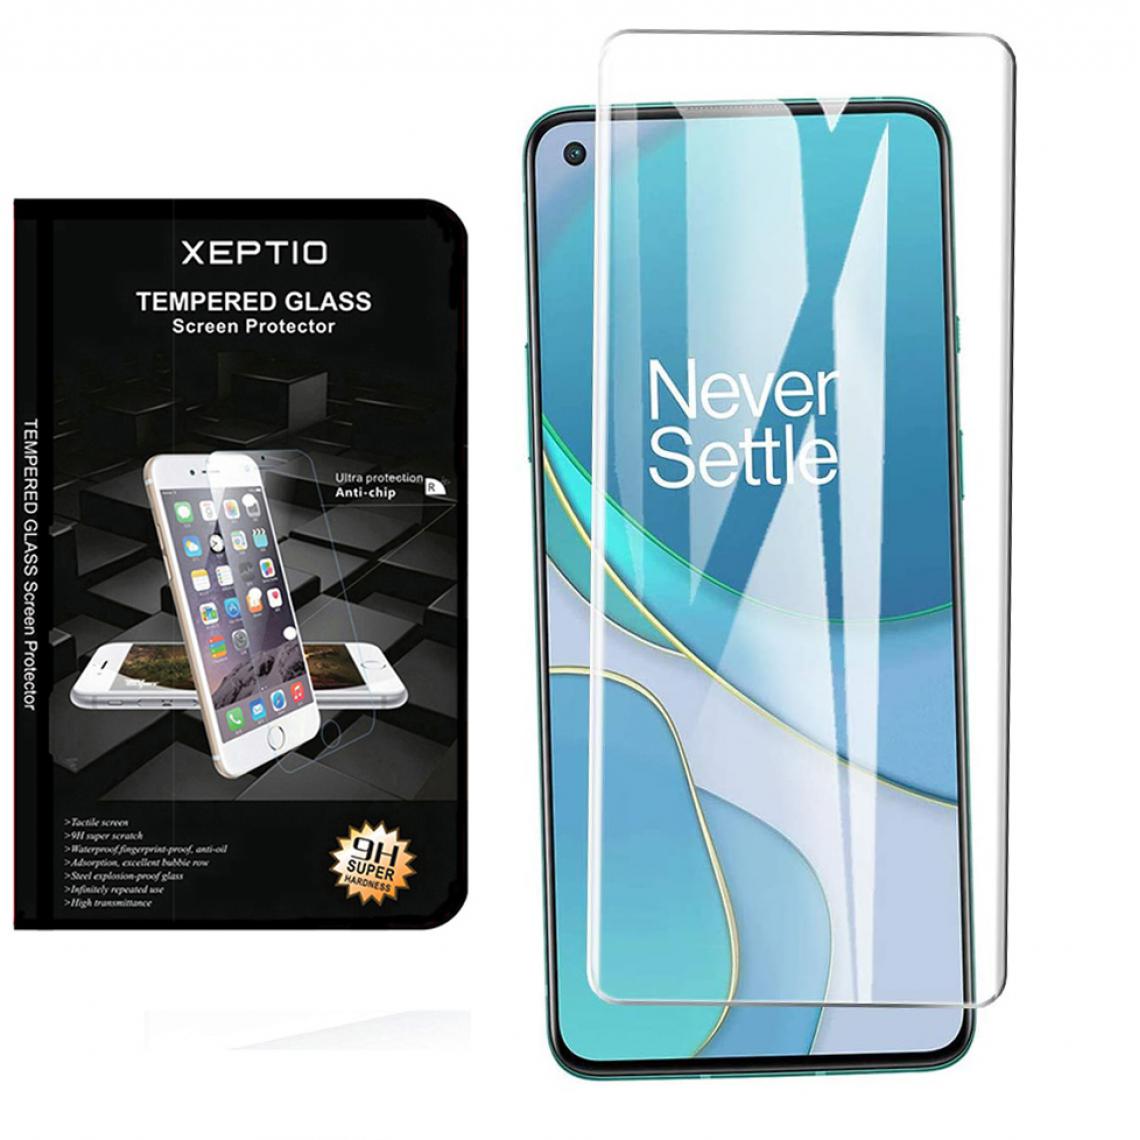 Xeptio - Protection d'écran OnePlus 8T 5G Verre trempé - Tempered Glass Screen Protector 9H Premium/Films vitre Protecteur d'écran - Accessoires - Protection écran smartphone